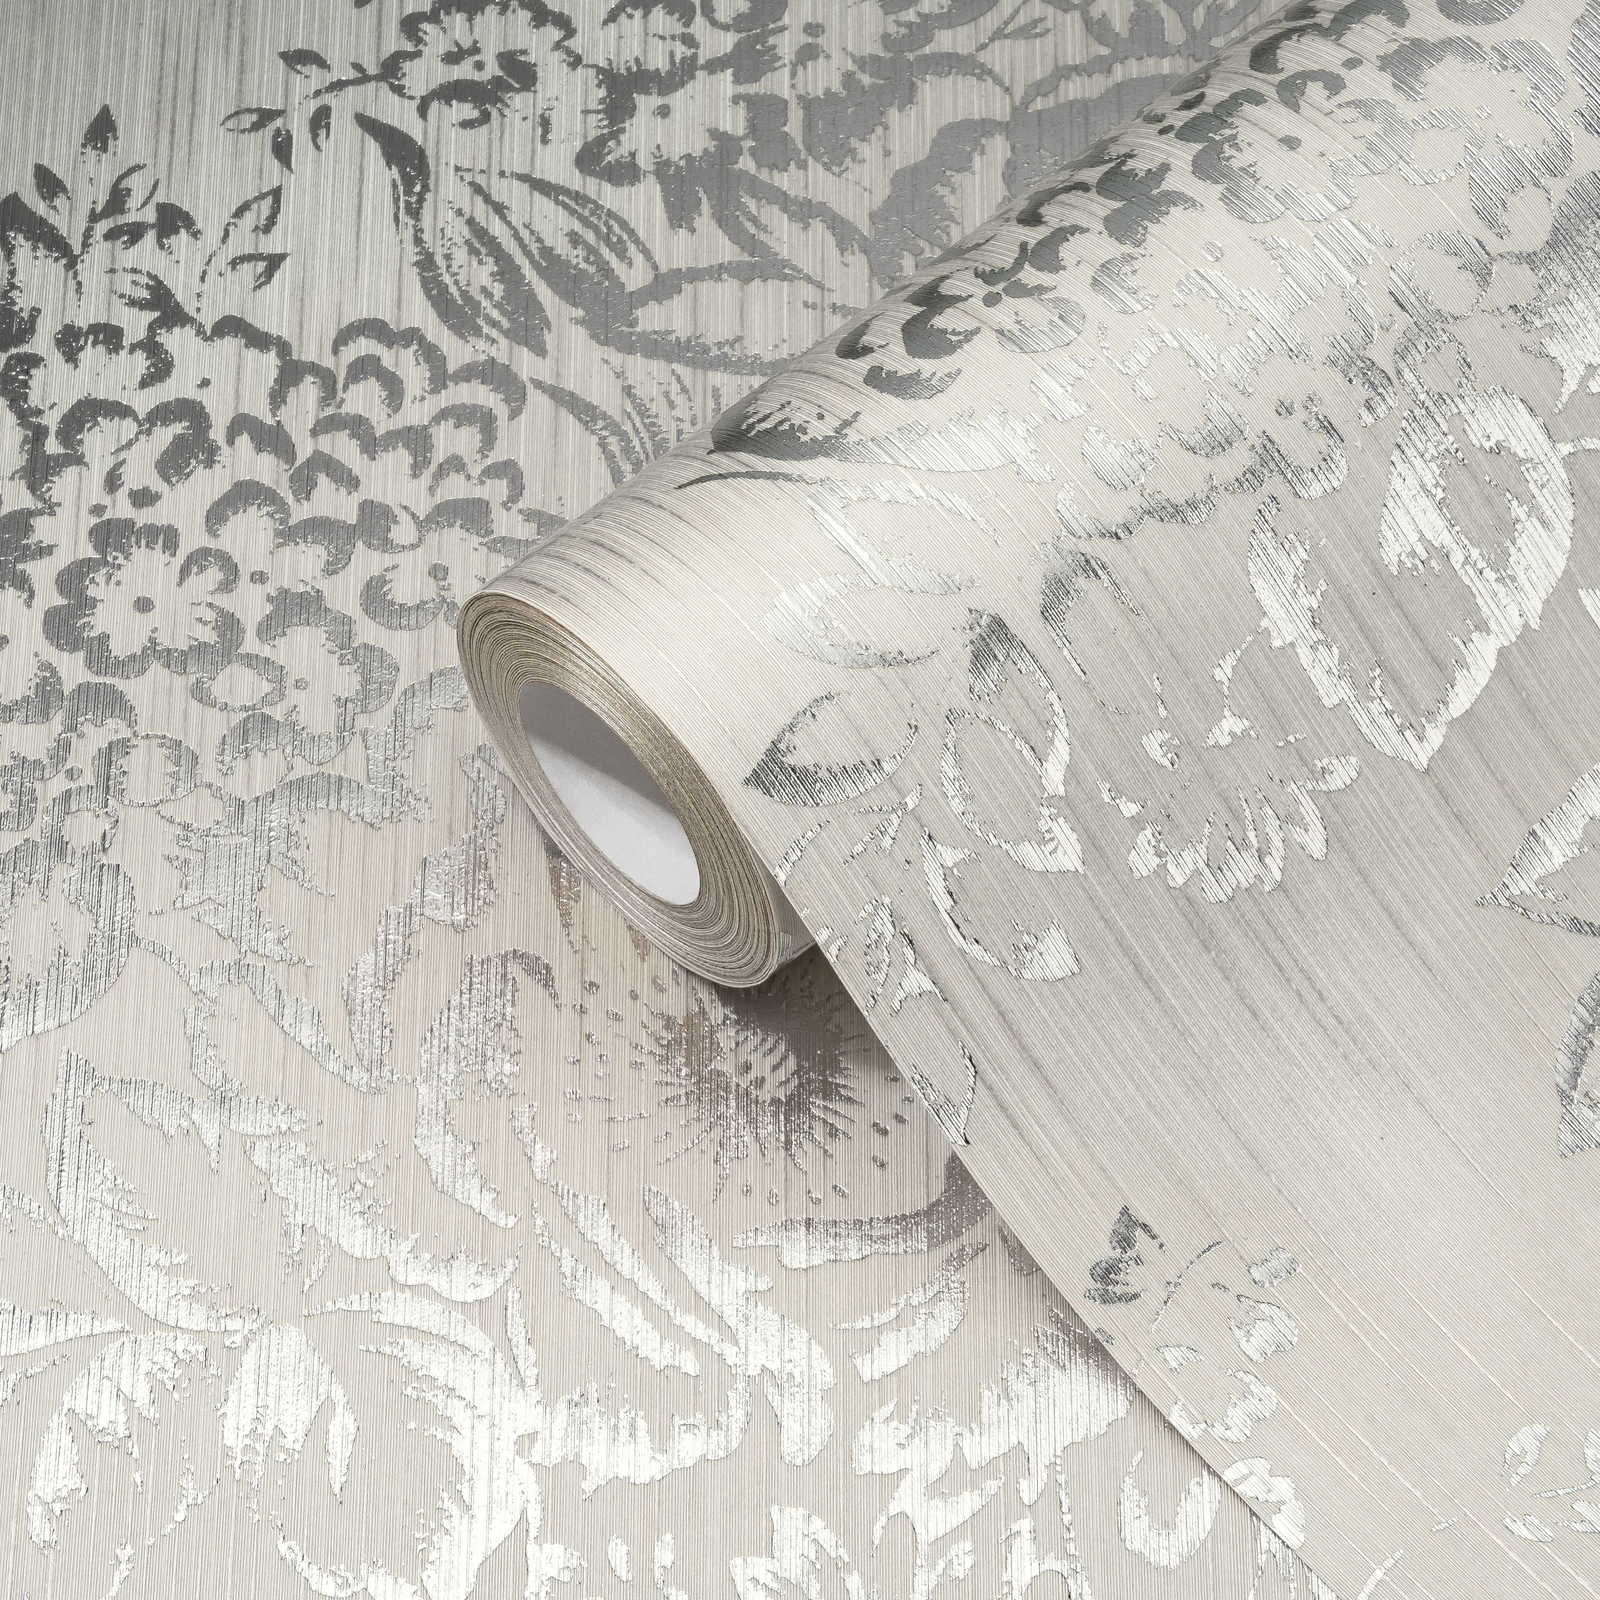             Textuurbehang met zilveren bloemenpatroon - zilver, grijs
        